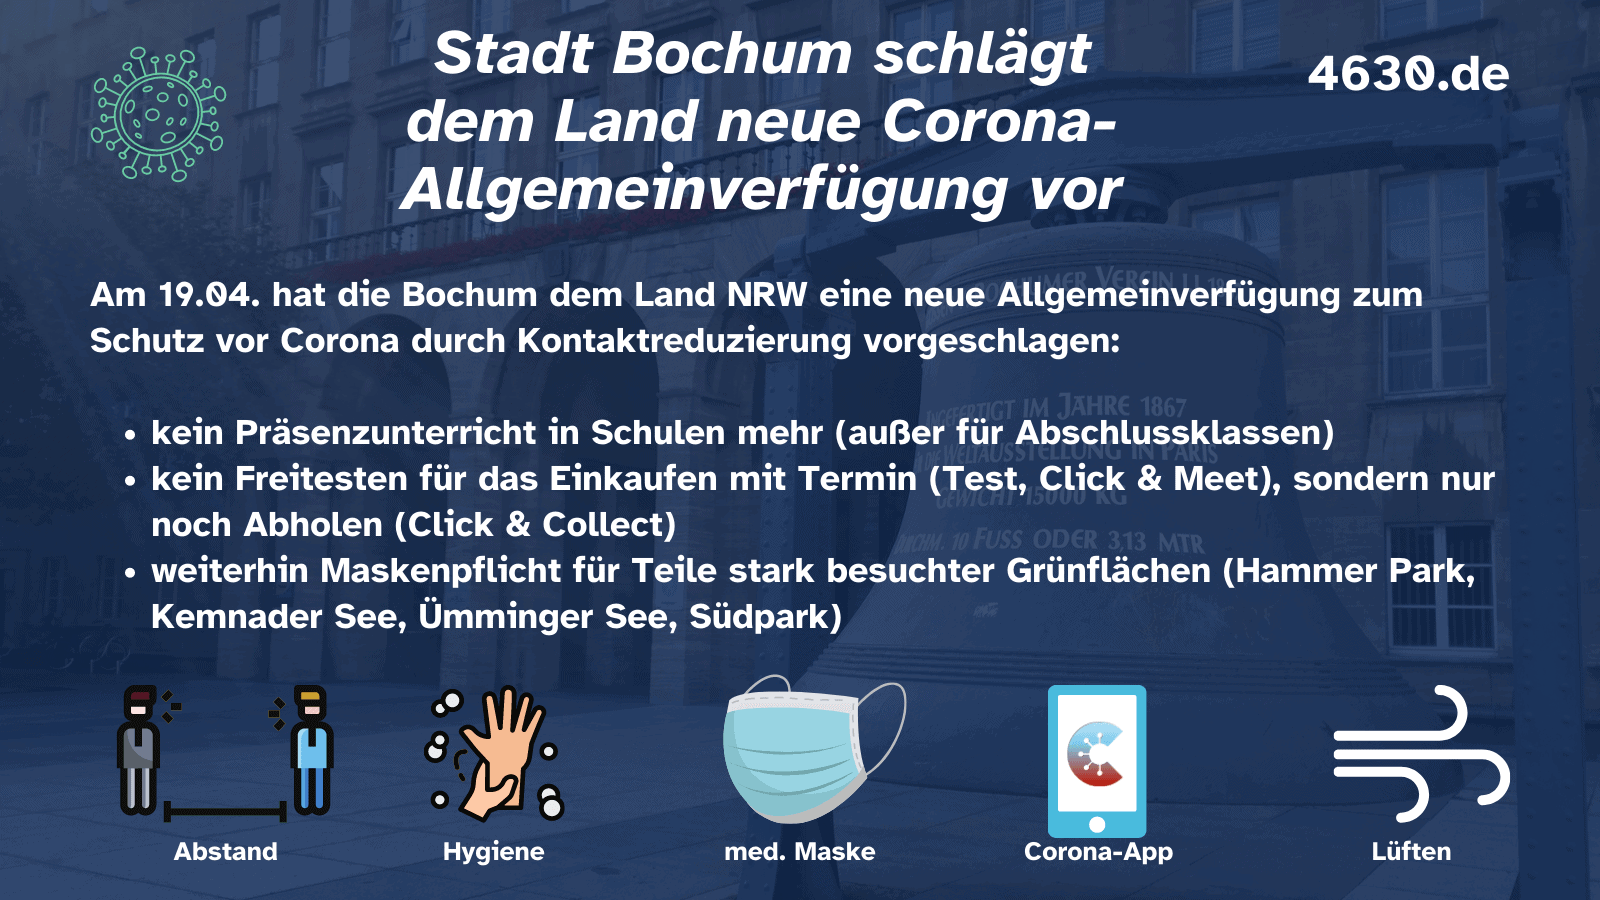 Stadt Bochum schlägt dem Land neue Corona-Allgemeinverfügung vor (19.04.)